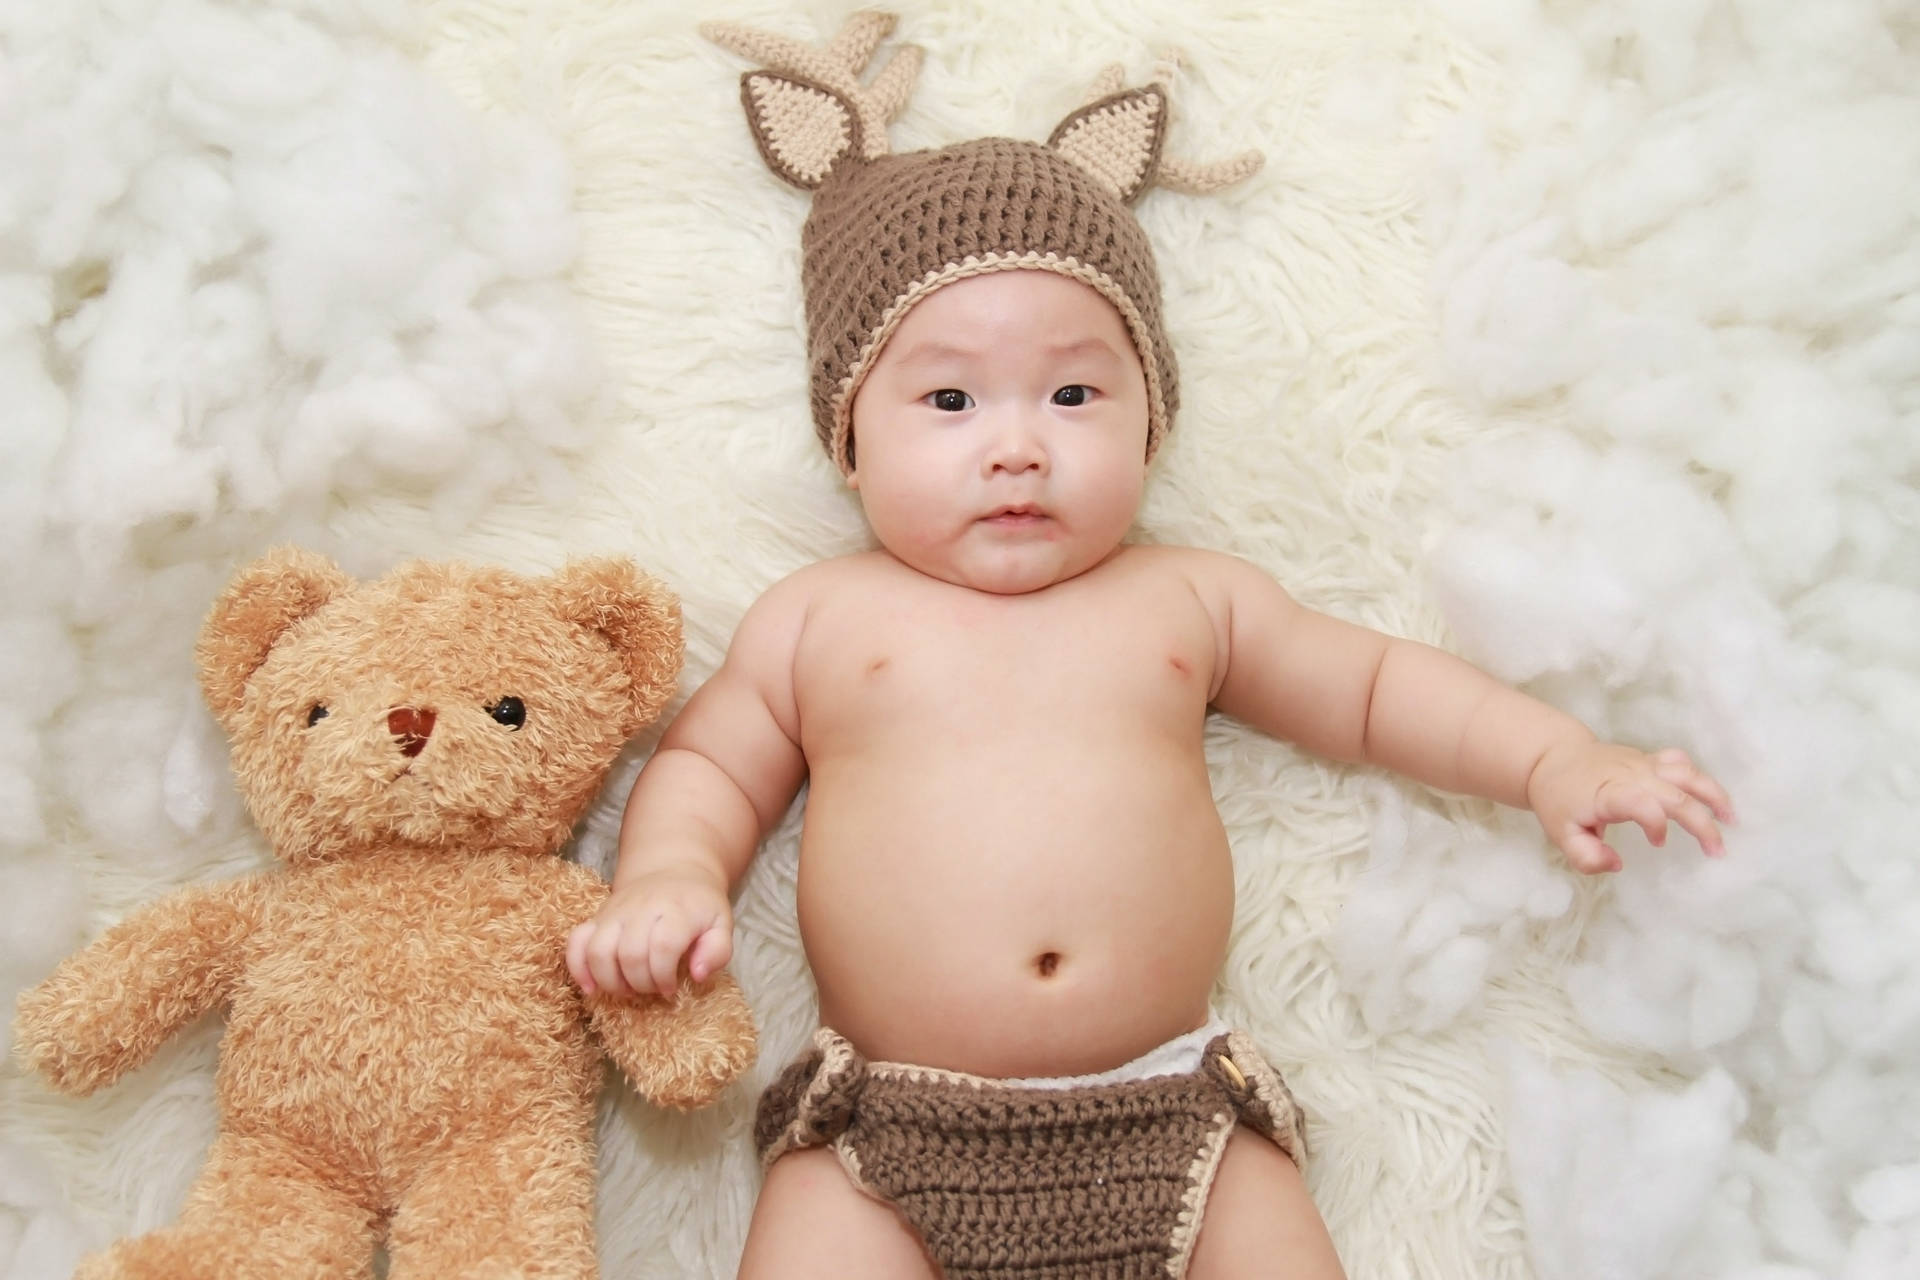 Very Cute Baby With Teddy Bear